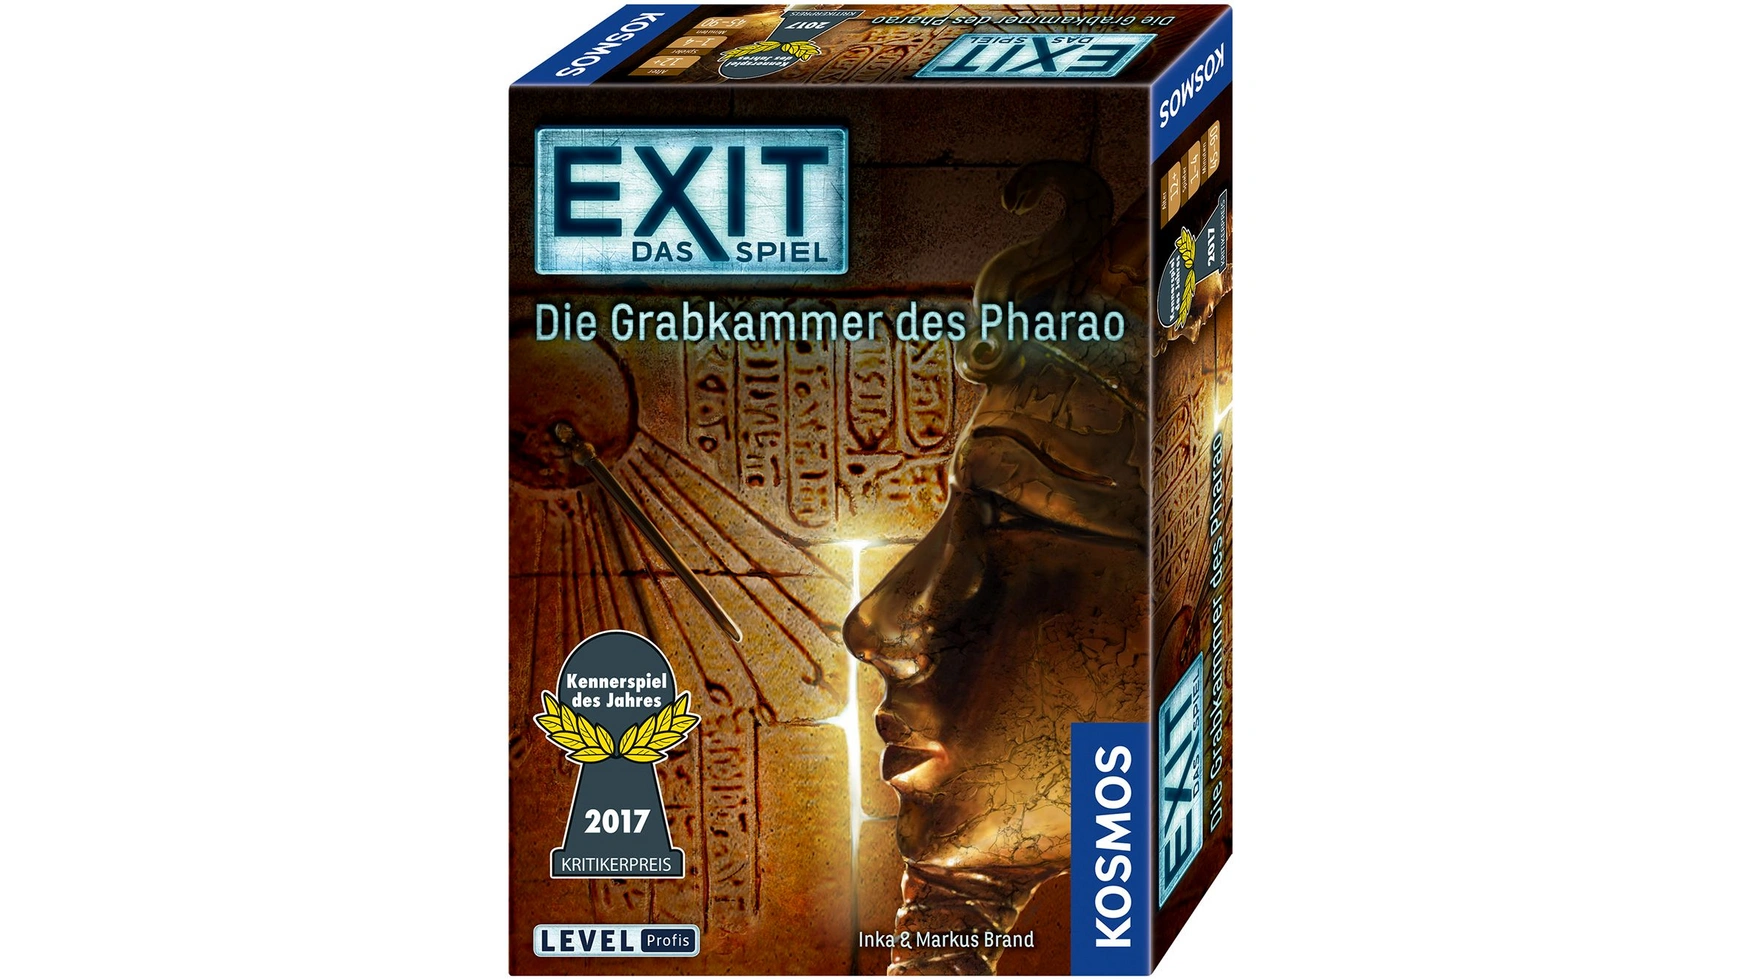 Выход игра погребальная камера фараона Kosmos тутанхамон как была найдена гробница юного фараона новиальс а паломар эва